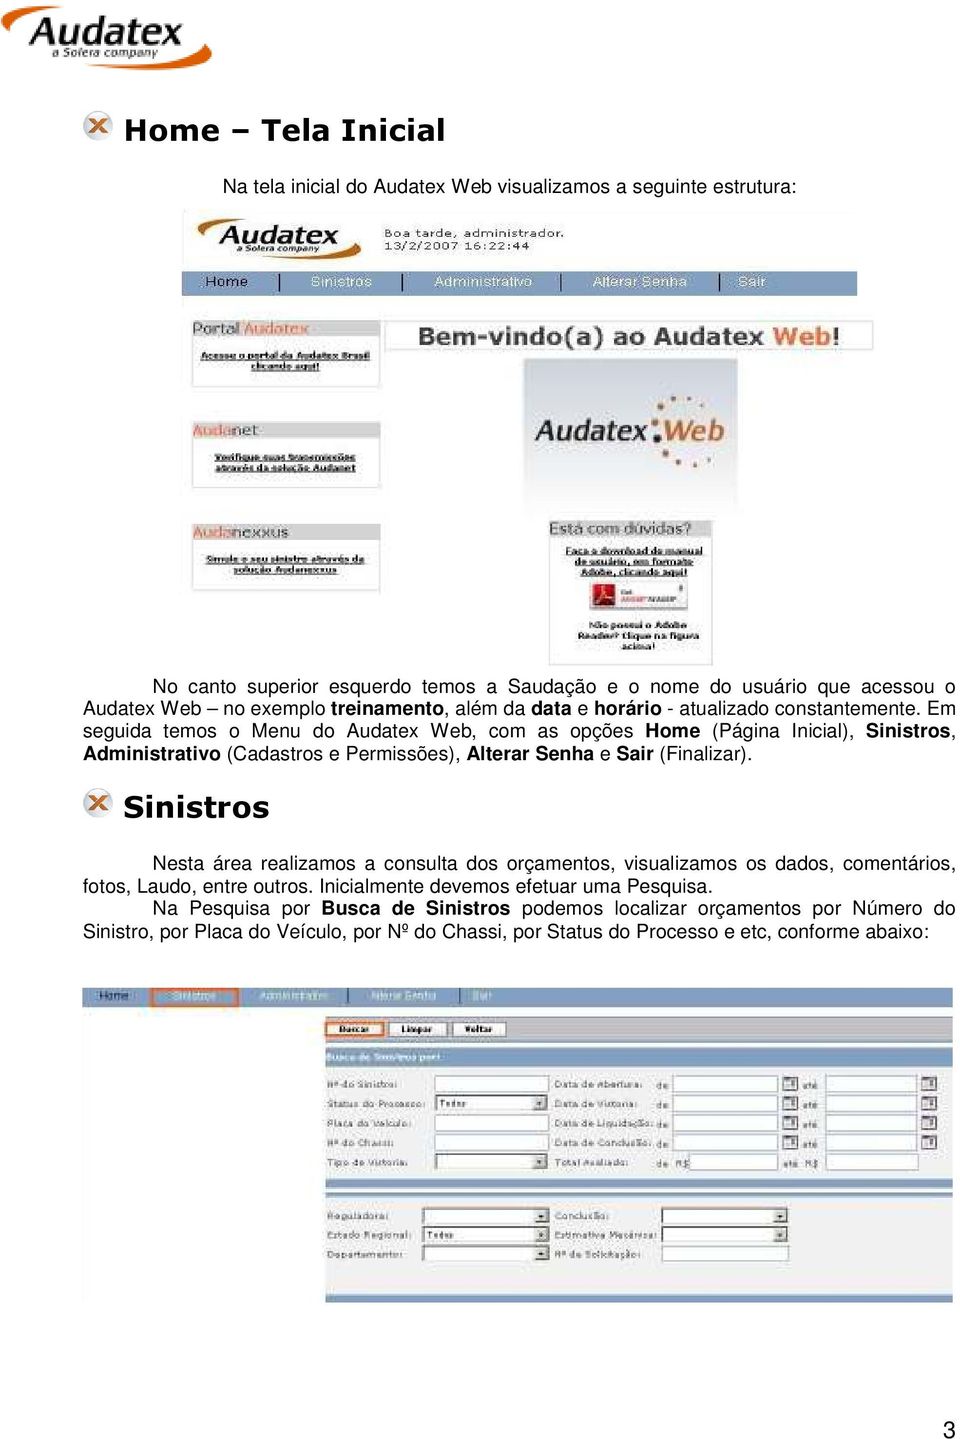 Em seguida temos o Menu do Audatex Web, com as opções Home (Página Inicial), Sinistros, Administrativo (Cadastros e Permissões), Alterar Senha e Sair (Finalizar).